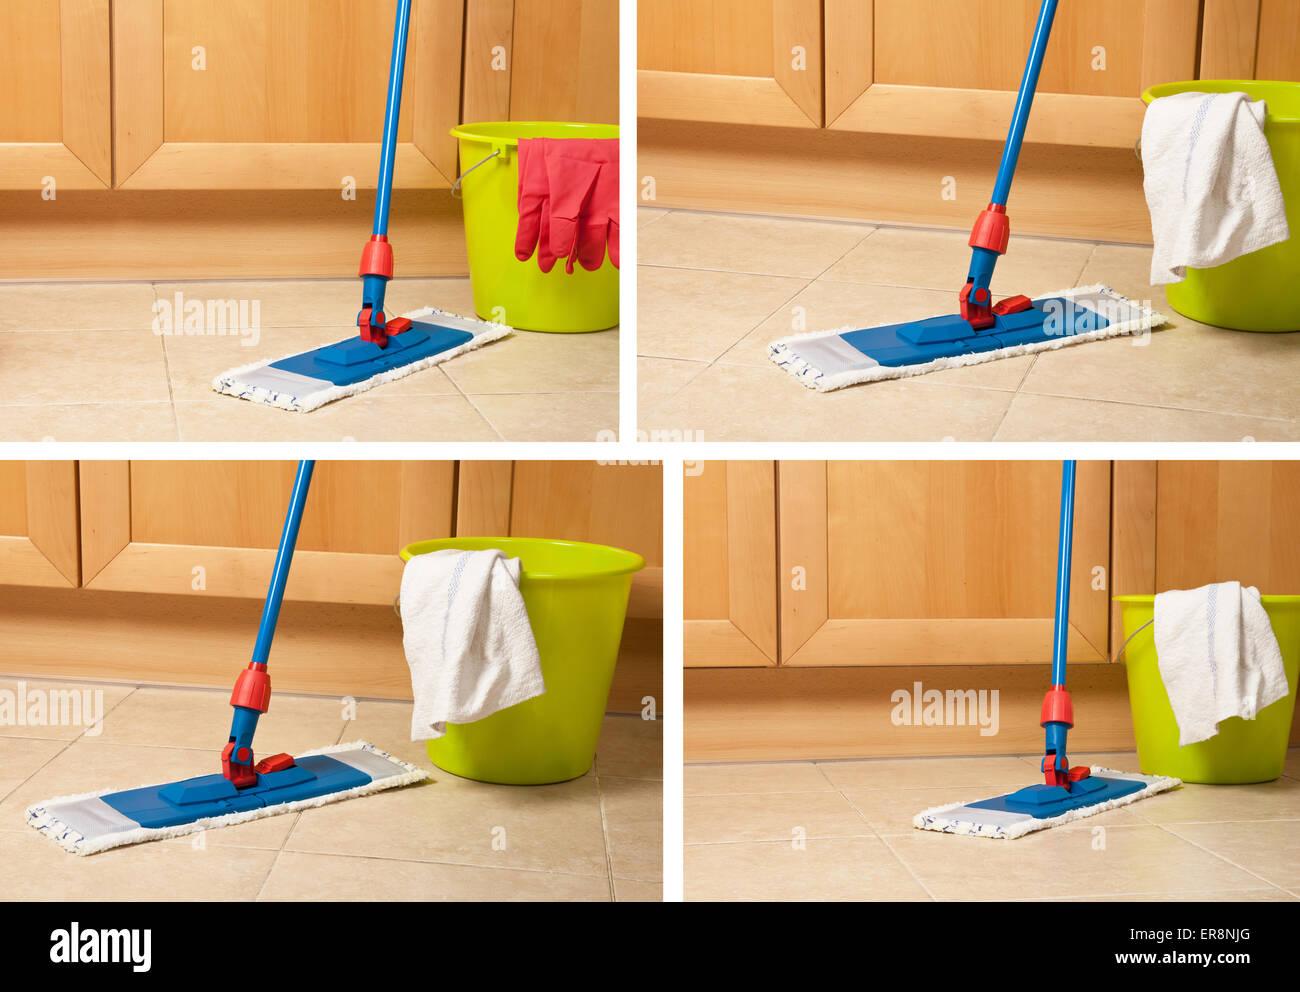 Haus-Elemente für Reinigung, Eimer, Mopp, Handschuhe in der Nähe von Küchenmöbeln im Stock Stockfoto